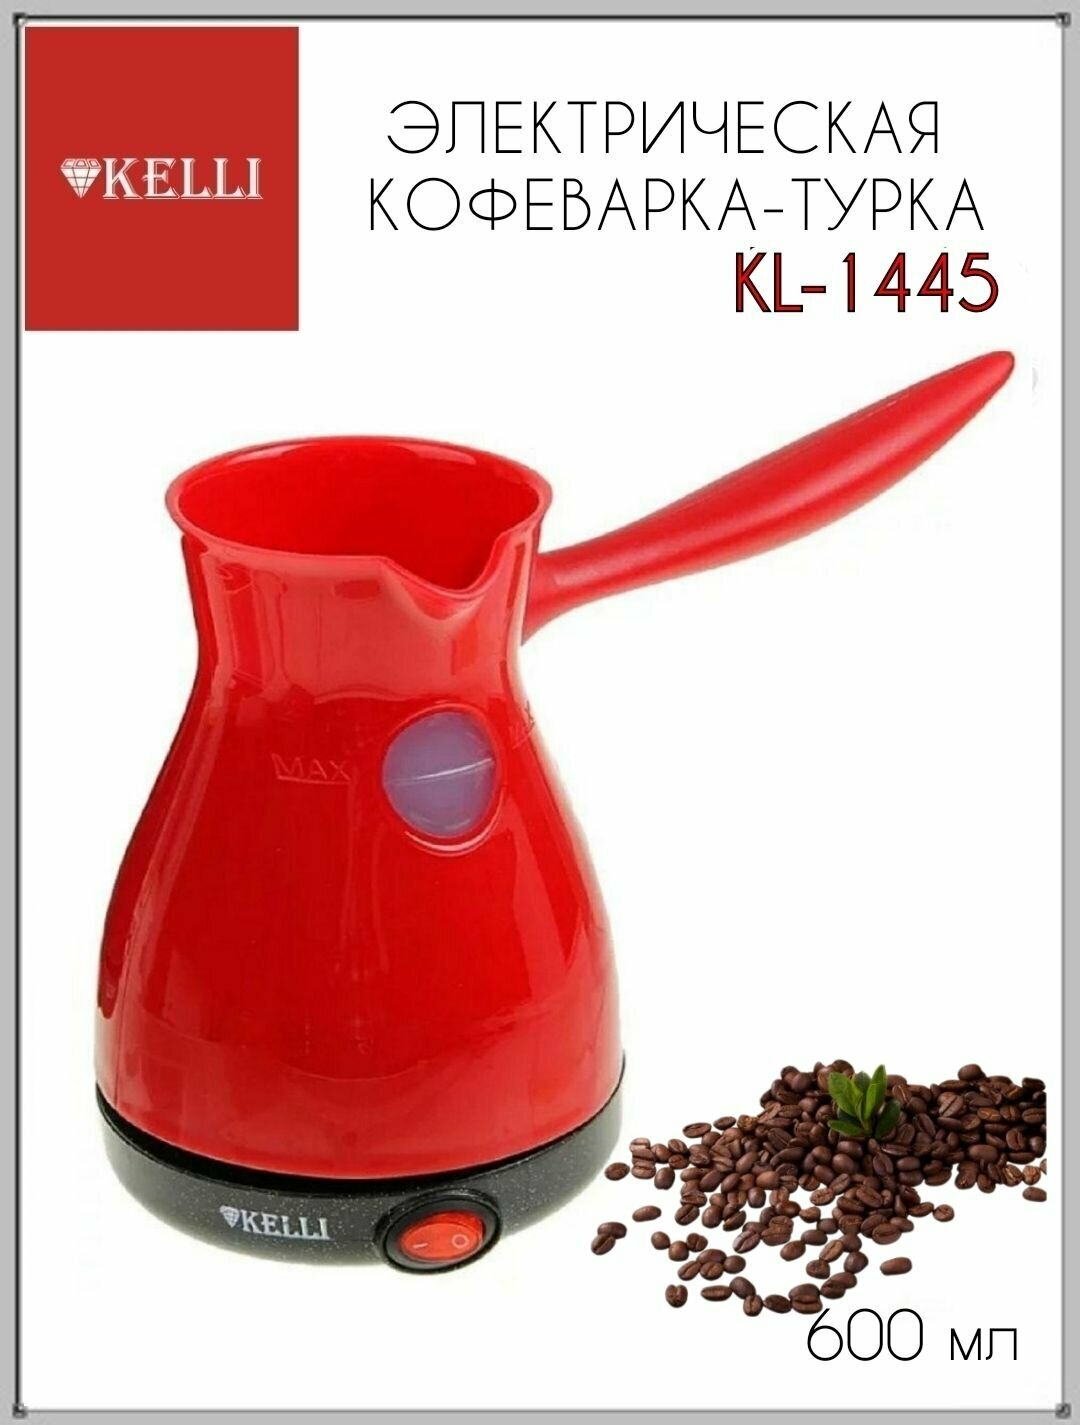 Электрическая кофеварка-турка Kelli KL-1445 Красная 1шт, турка, турка электрическая, турецкий кофе, кофеварка, кофеварка-турка, электрическая кофеварка, подарок маме, подарок другу, подарок подруге, подарок маме, посуда для кухни,